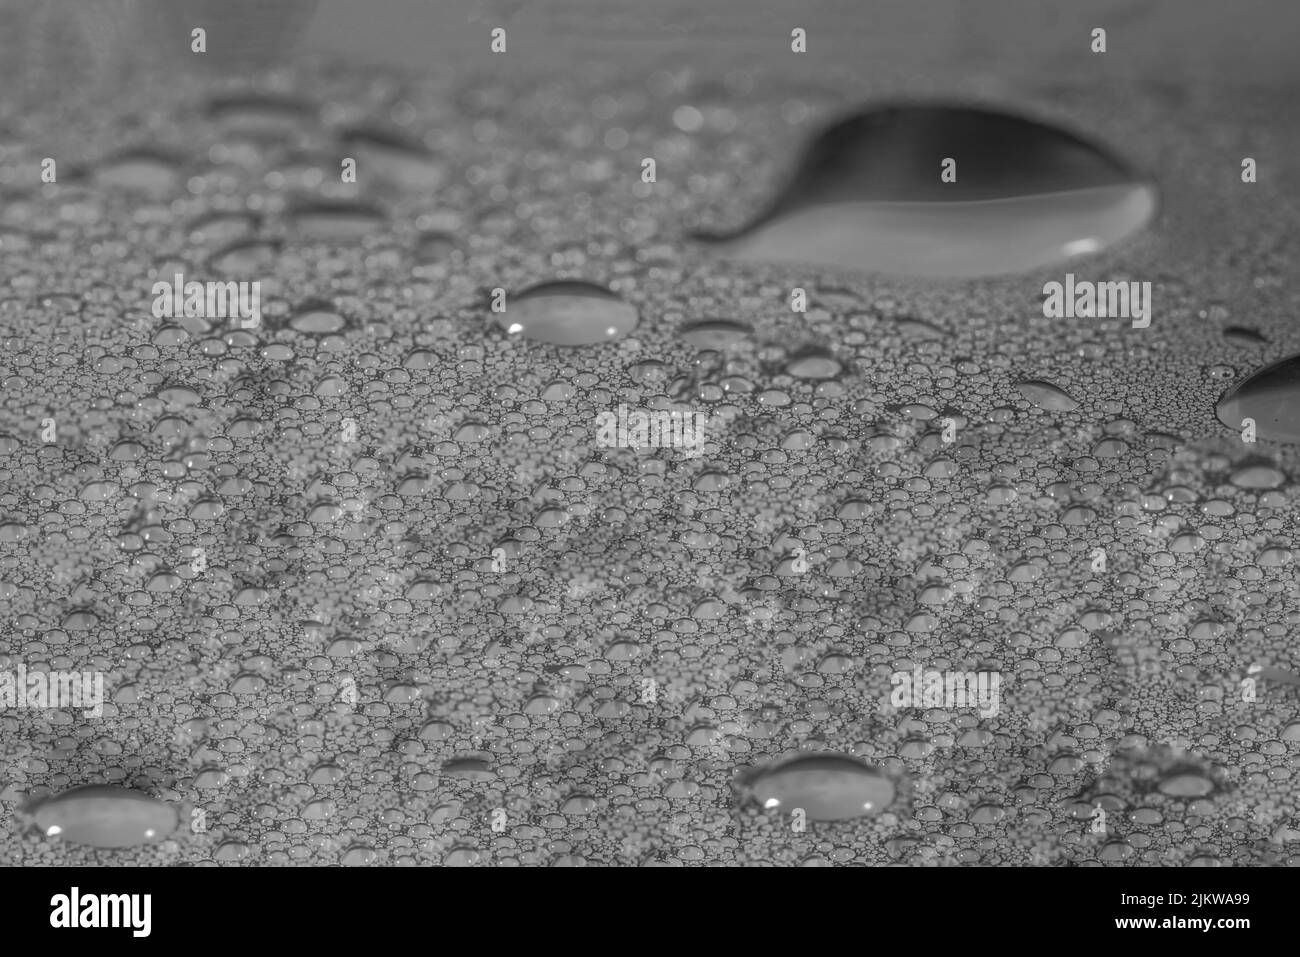 Una vista di una superficie grezza con gocce d'acqua su di essa creando una texture interessante Foto Stock